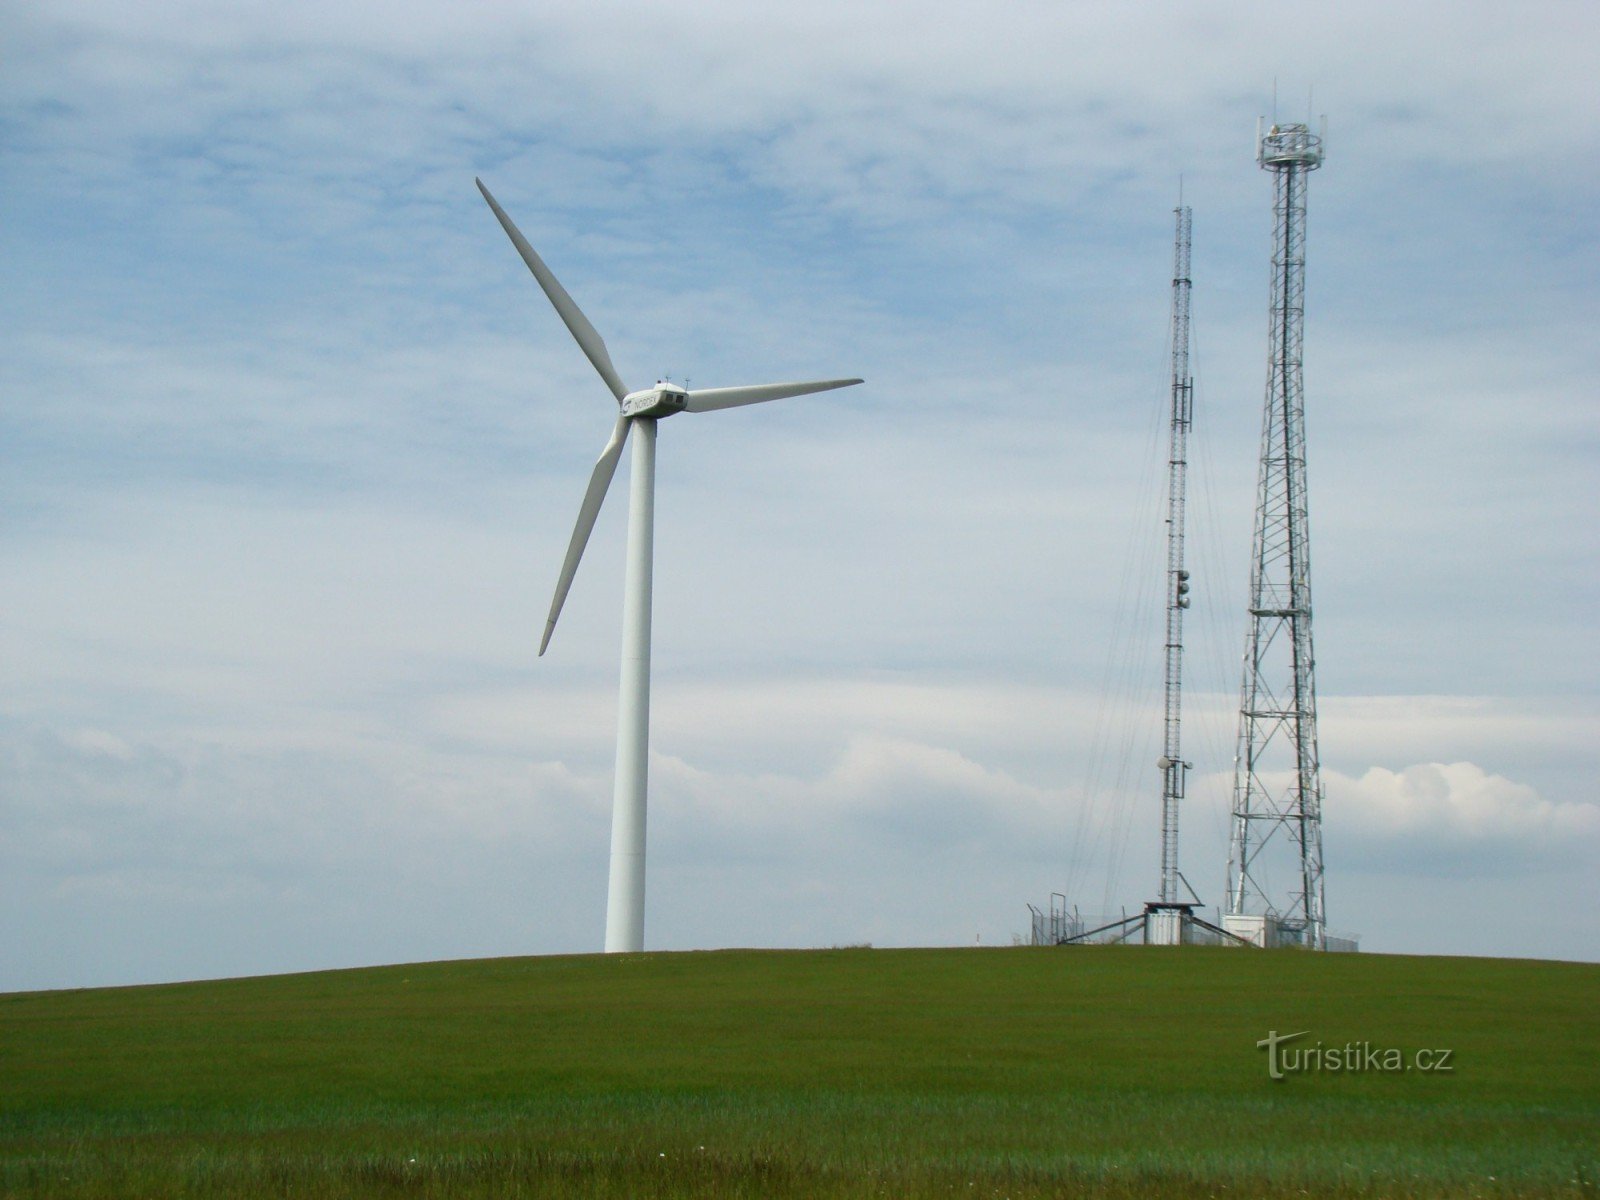 Wzgórze z dwoma nadajnikami z jednej z dwóch farm wiatrowych